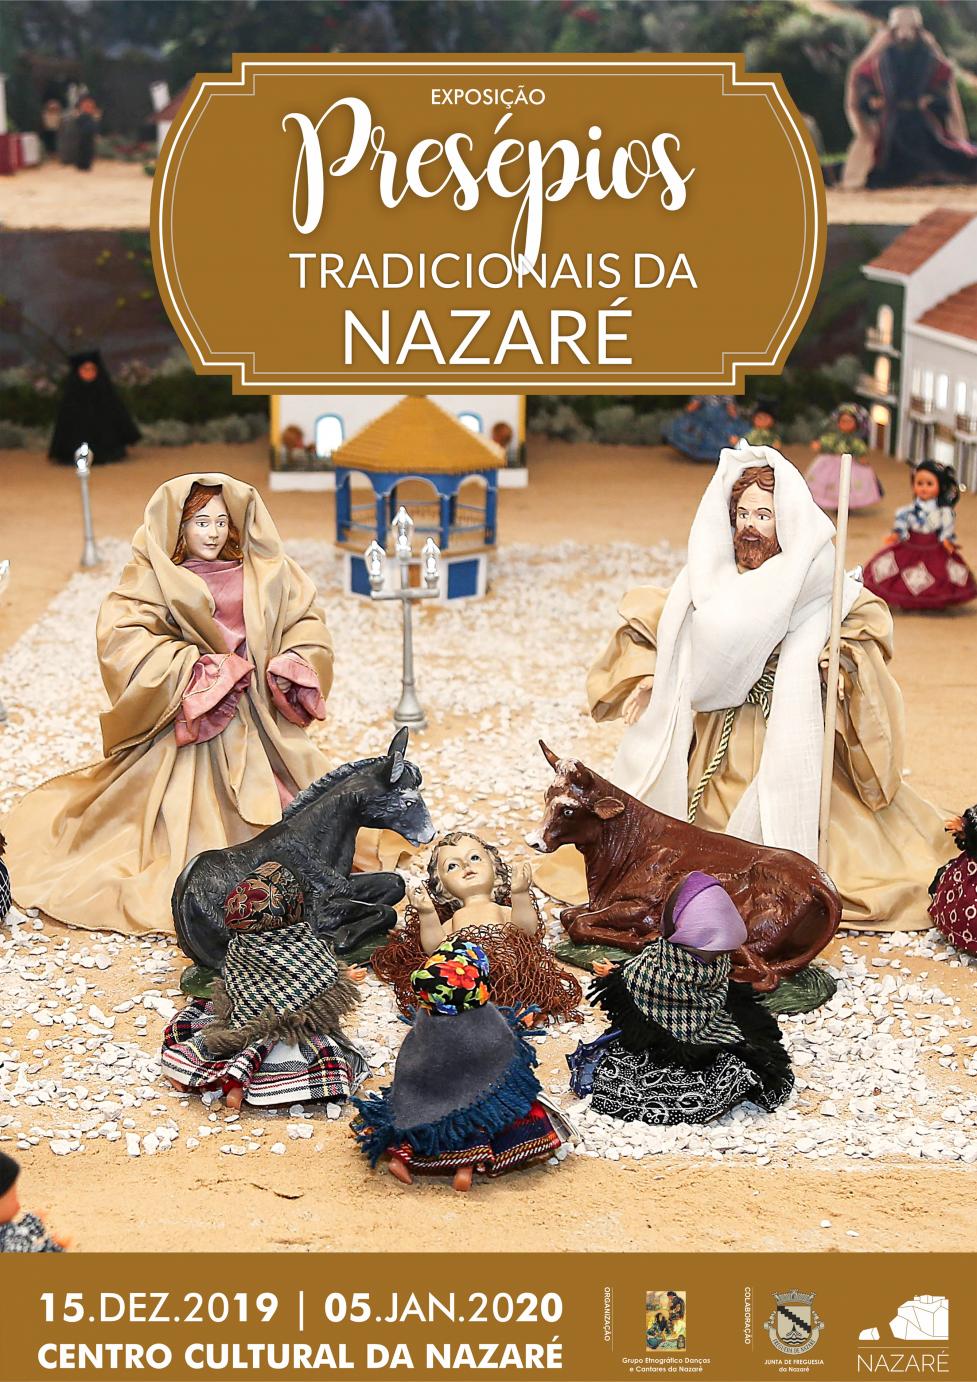 Exposição "Presépios tradicionais da Nazaré"